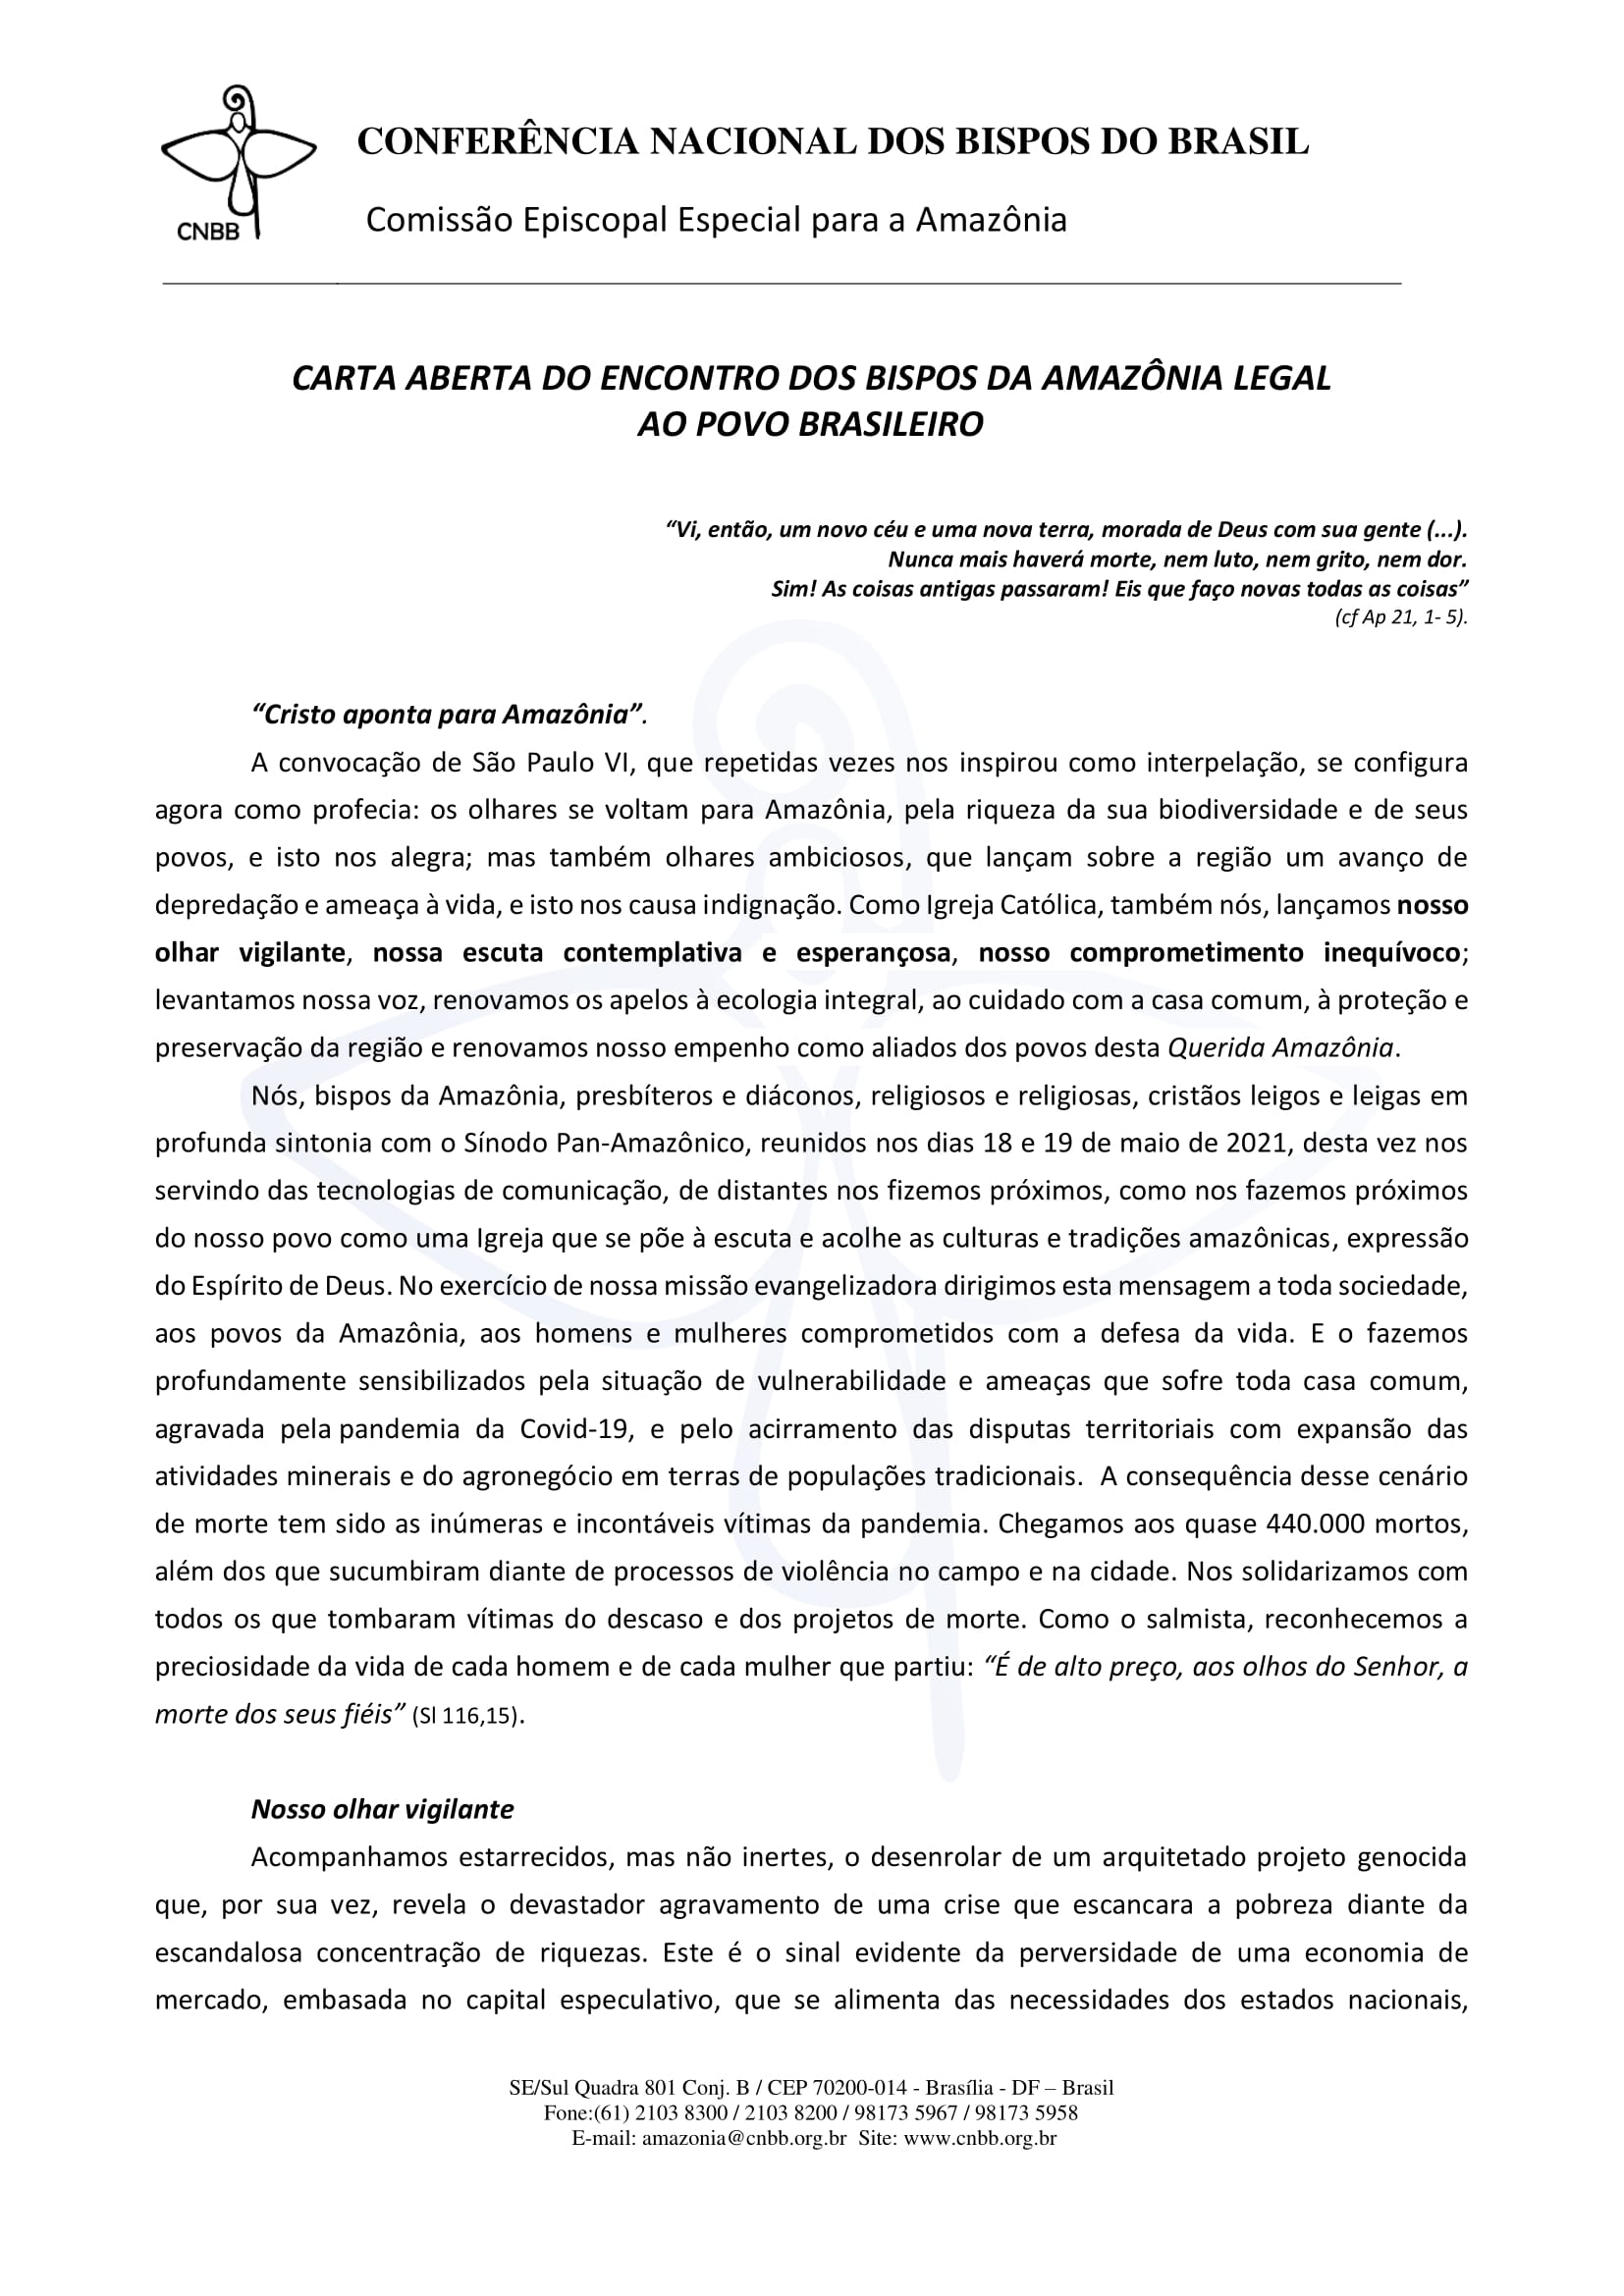 Carta-Aberta-Encontro-dos-Bispos-Amazonia-2021-1